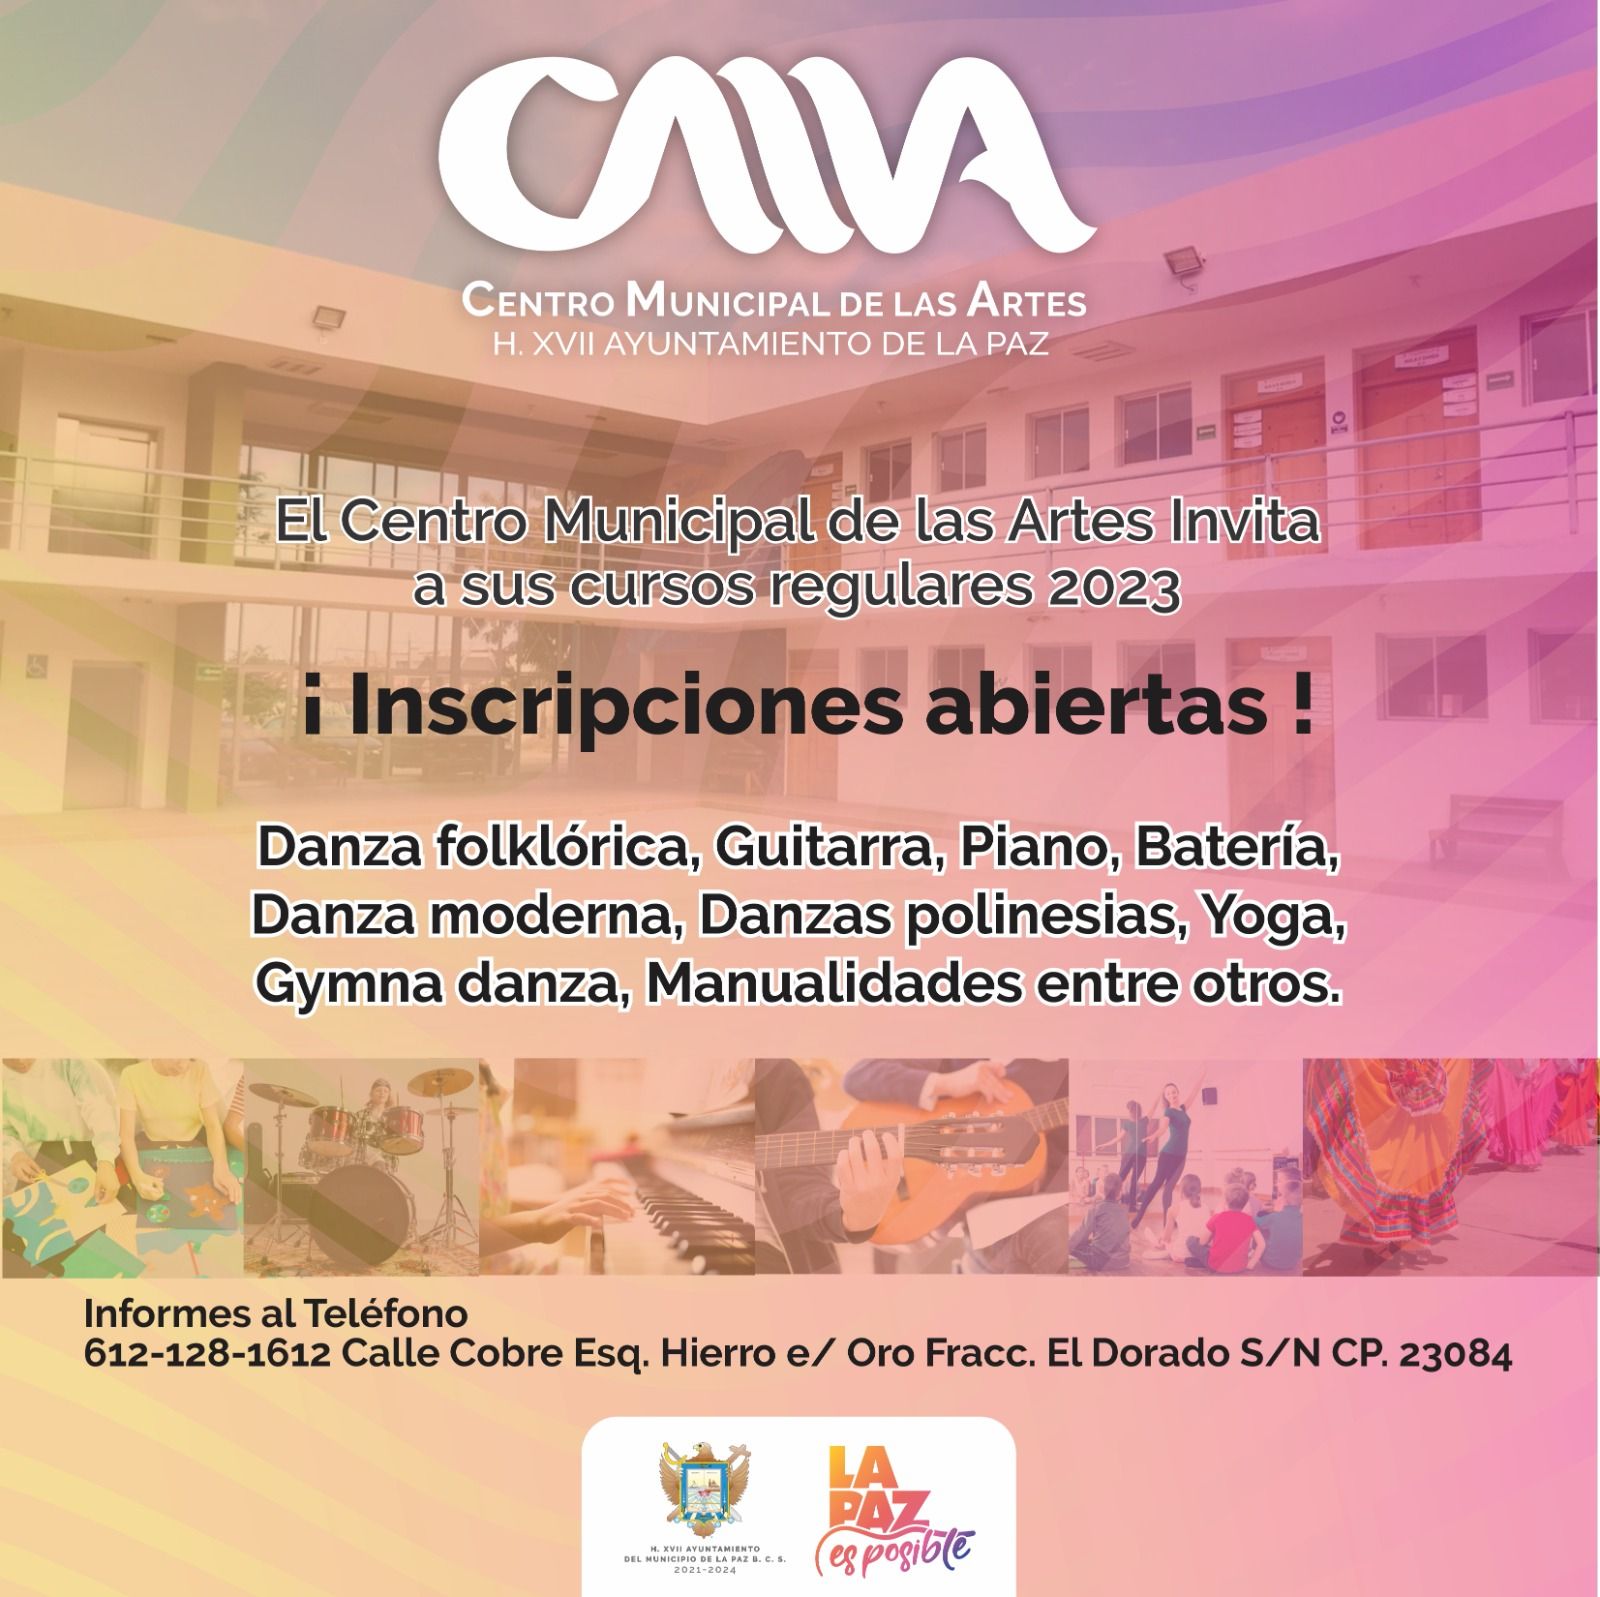 Invitan a los cursos y talleres en el Centro Municipal de las Artes